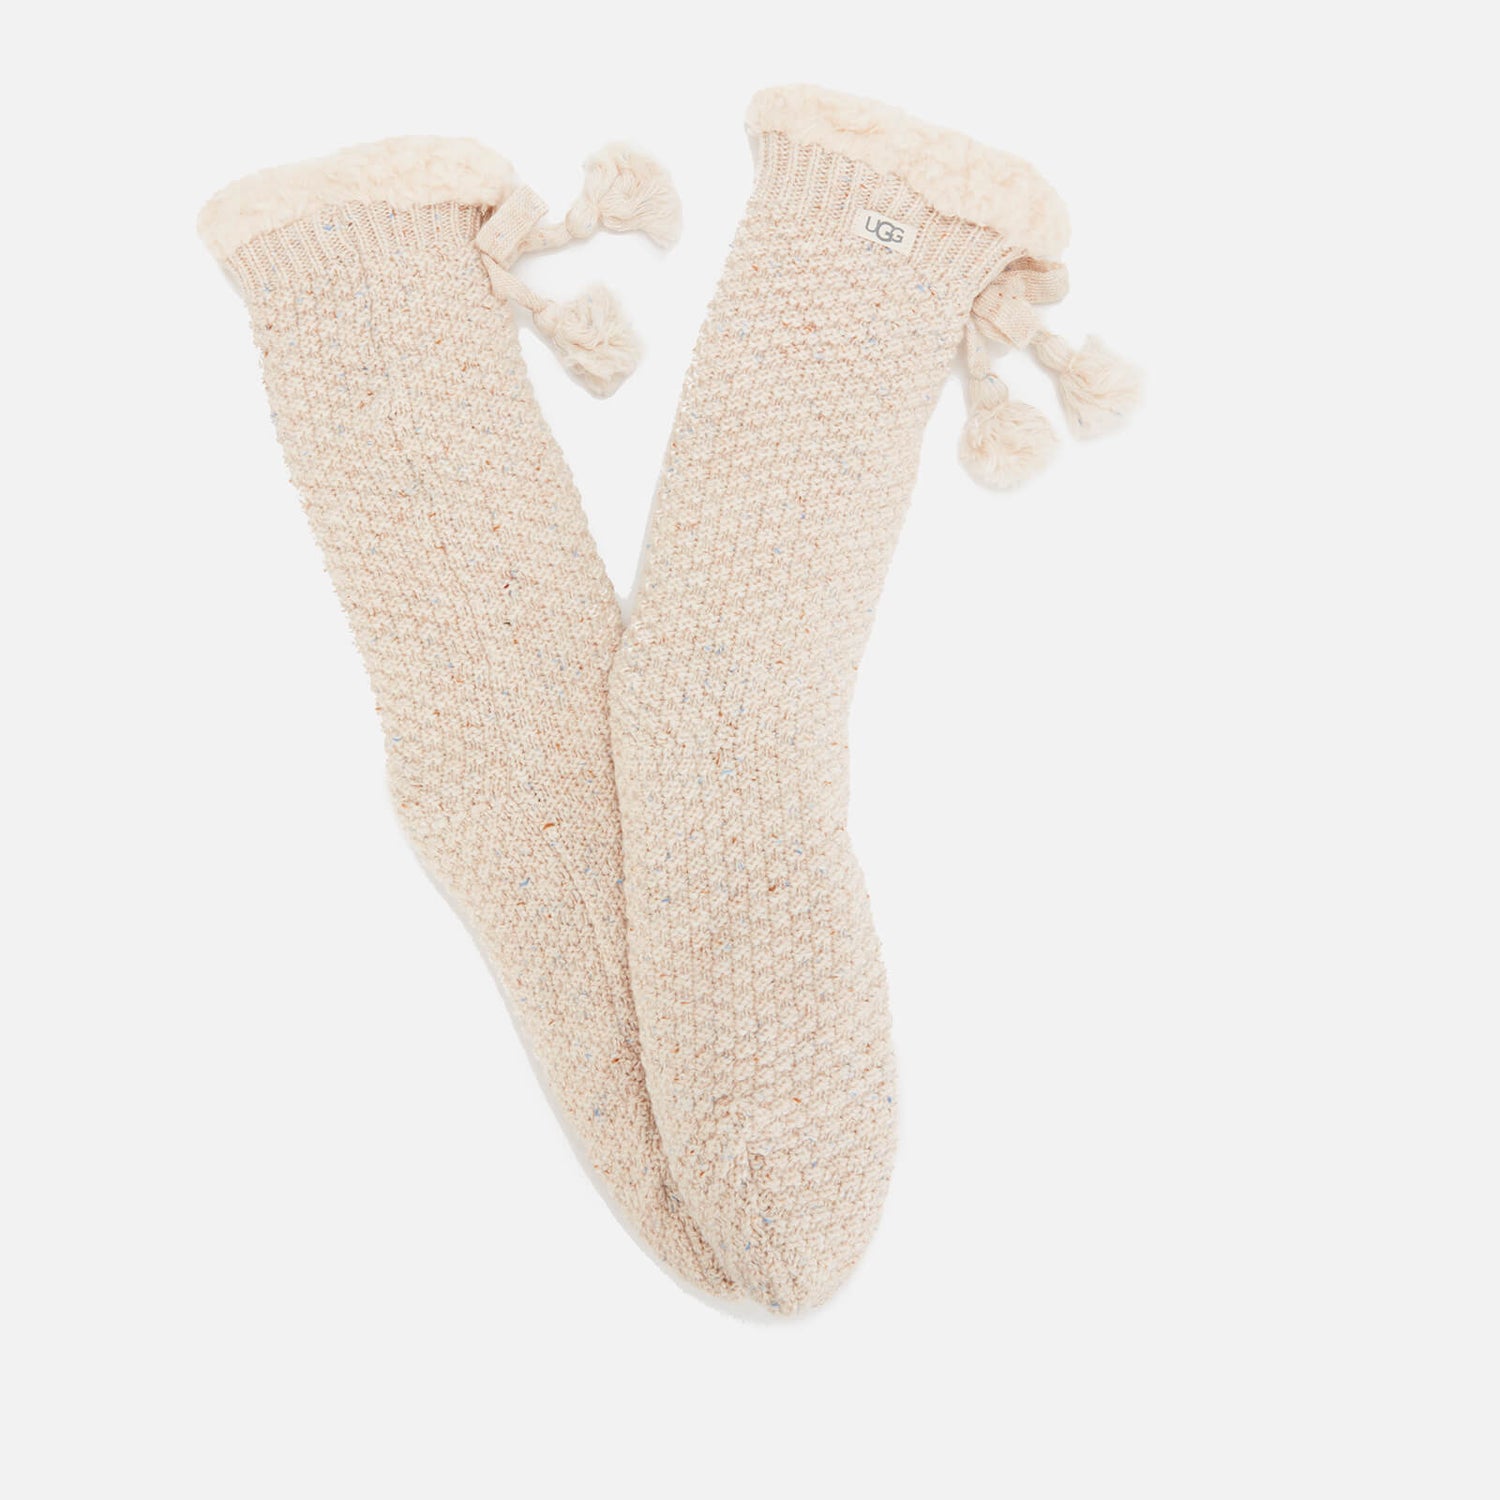 UGG Women's Nessie Fleece Lined Socks - Oatmeal